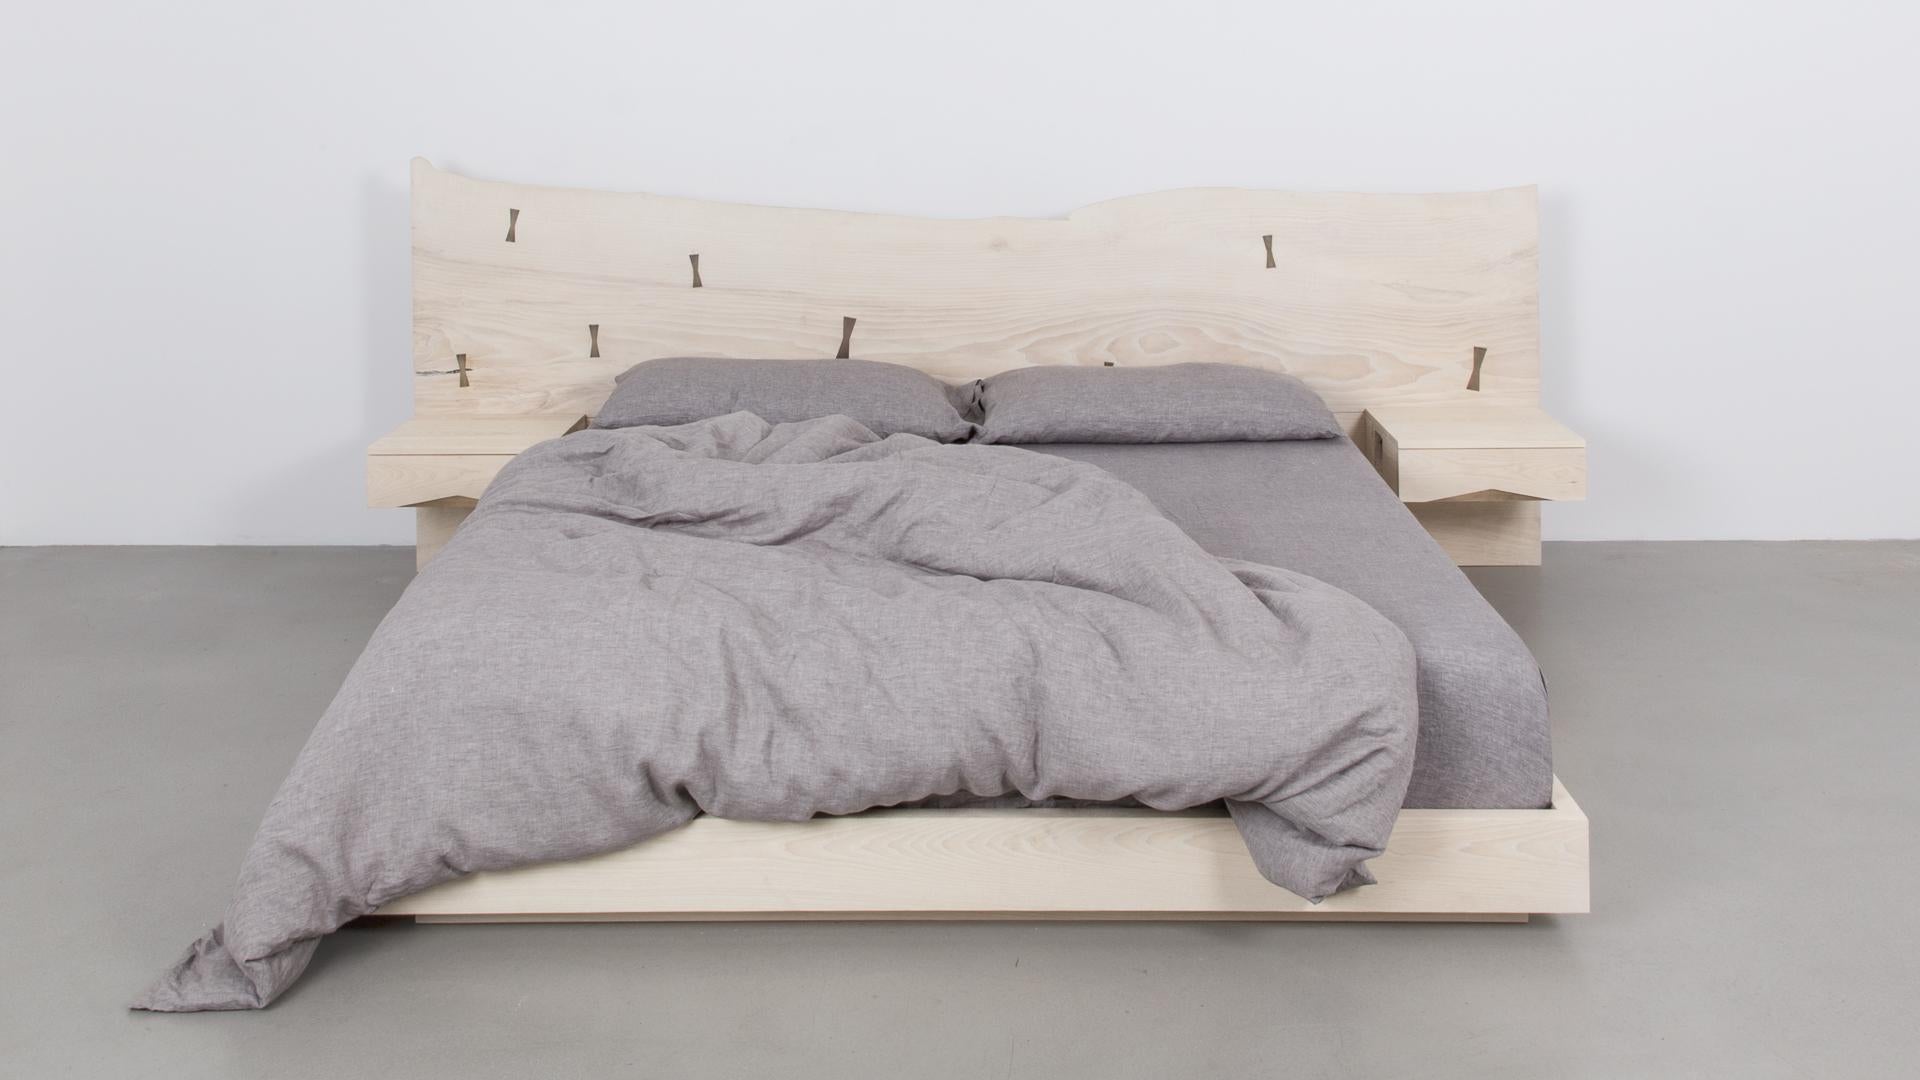 La tête de lit St. Pierre est fabriquée à partir d'une plaque de bois dur unique en son genre. La largeur et la hauteur de la tête de lit varient en fonction des dimensions de la dalle disponible. Le cadre de lit est disponible en métal ou en bois.